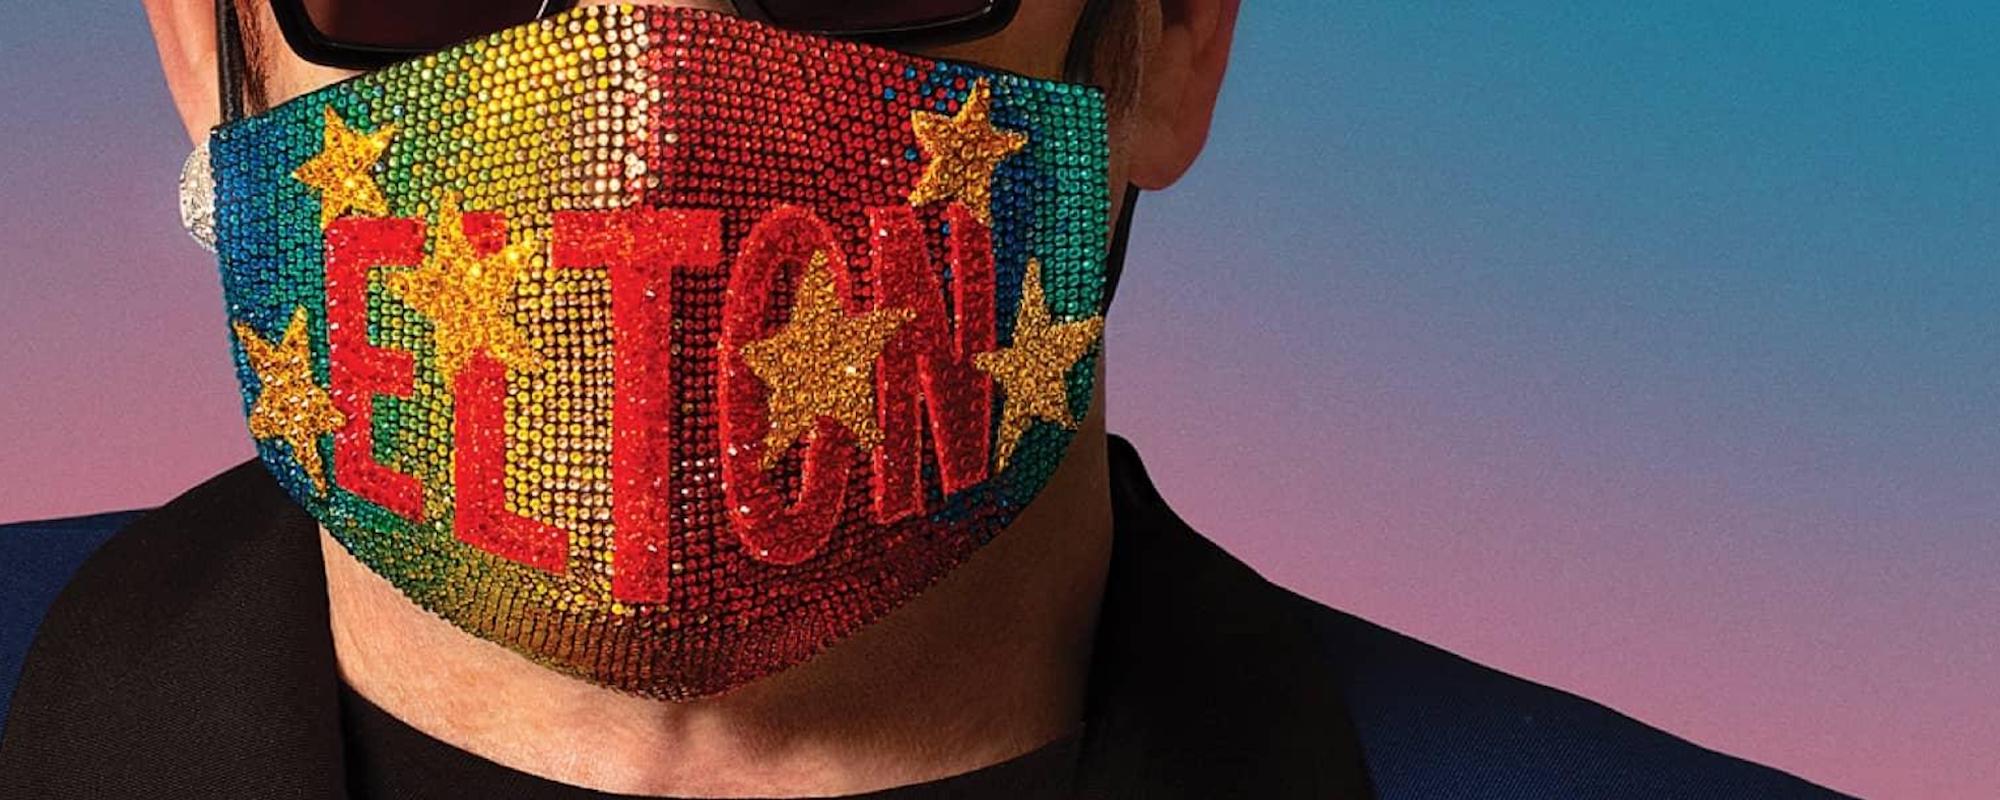 Elton John Releases Surprise ‘Lockdown Sessions’ Documentary